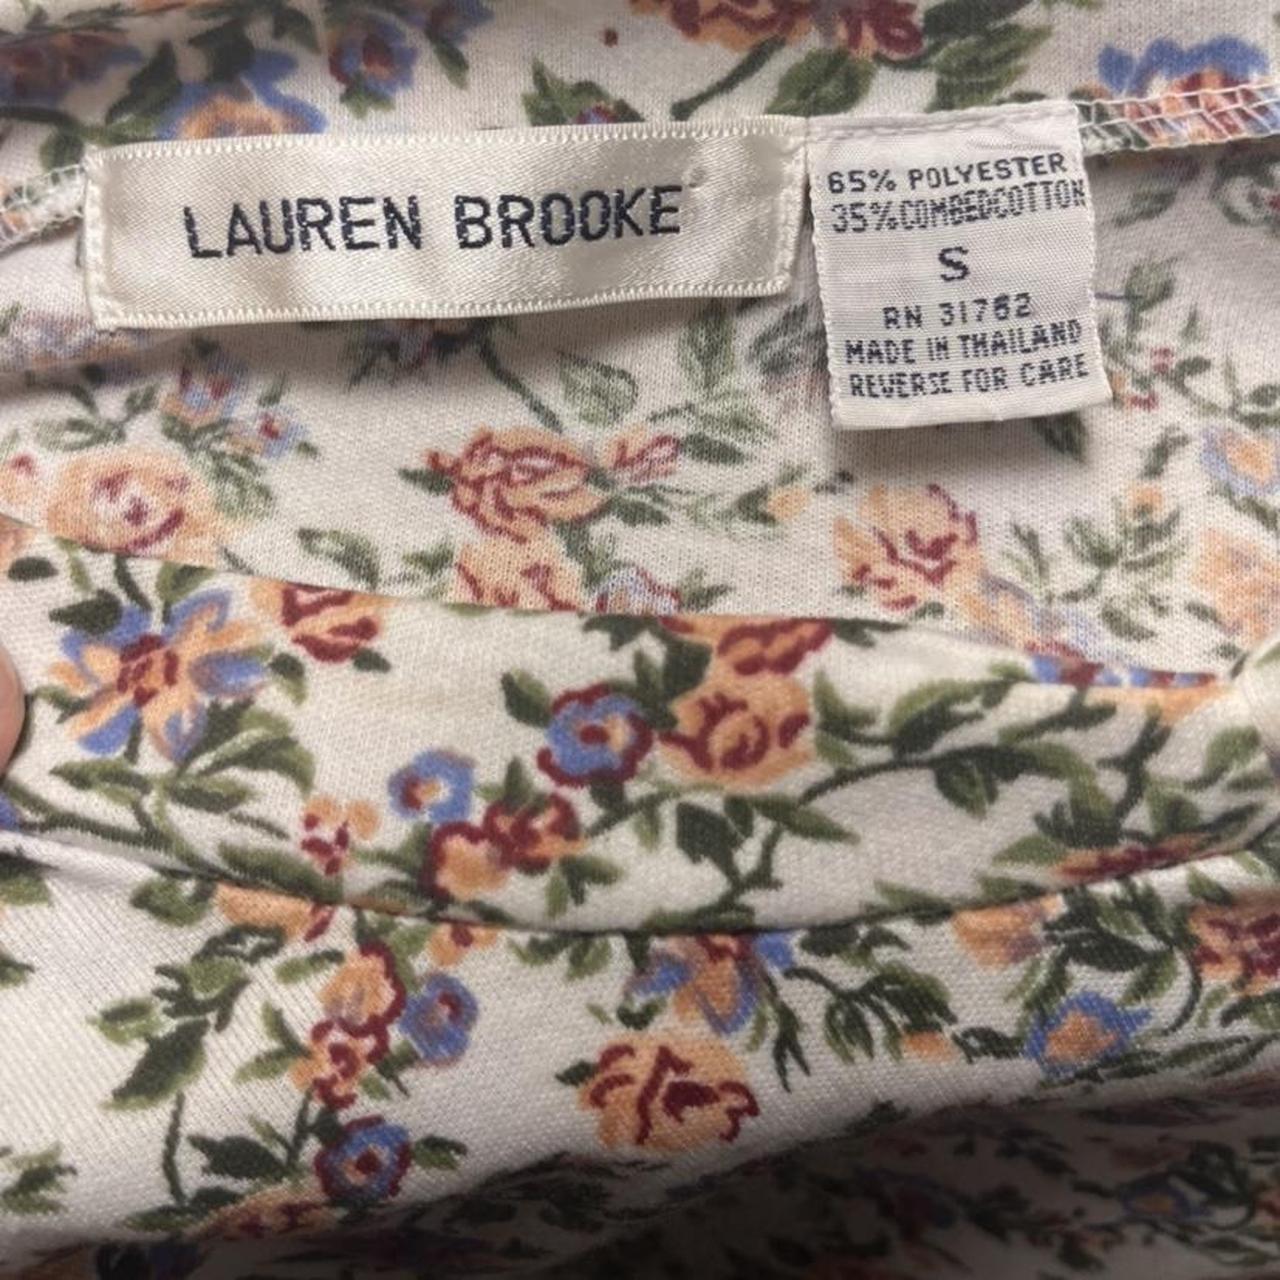 Product Image 4 - 80s floral drop-waist dress

vintage Lauren